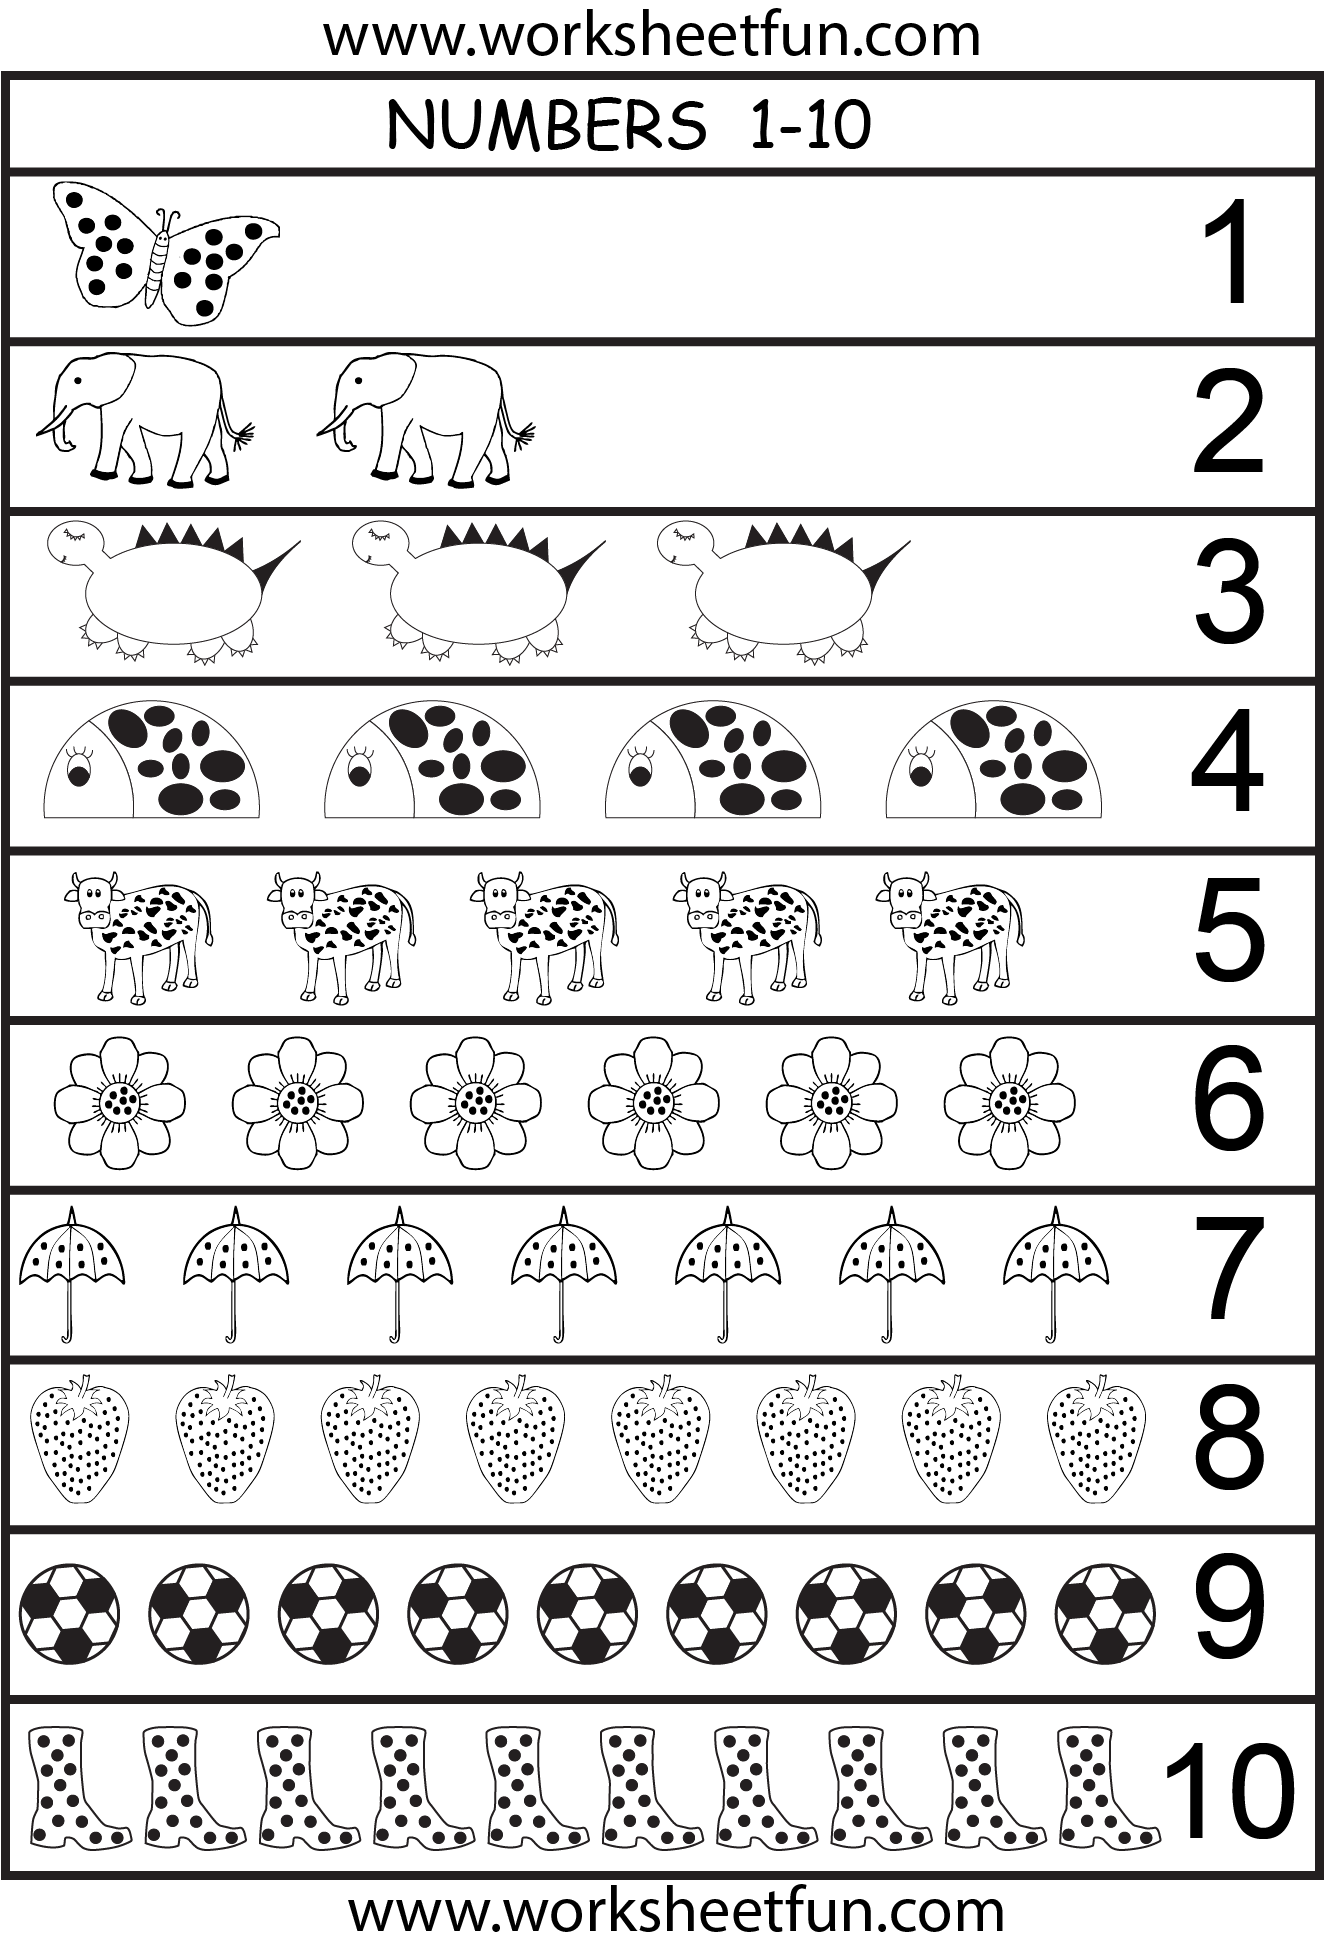 6 Best Images Of Printable Number Chart 1 10 Kindergarten Number Worksheets 1 10 Number Words 